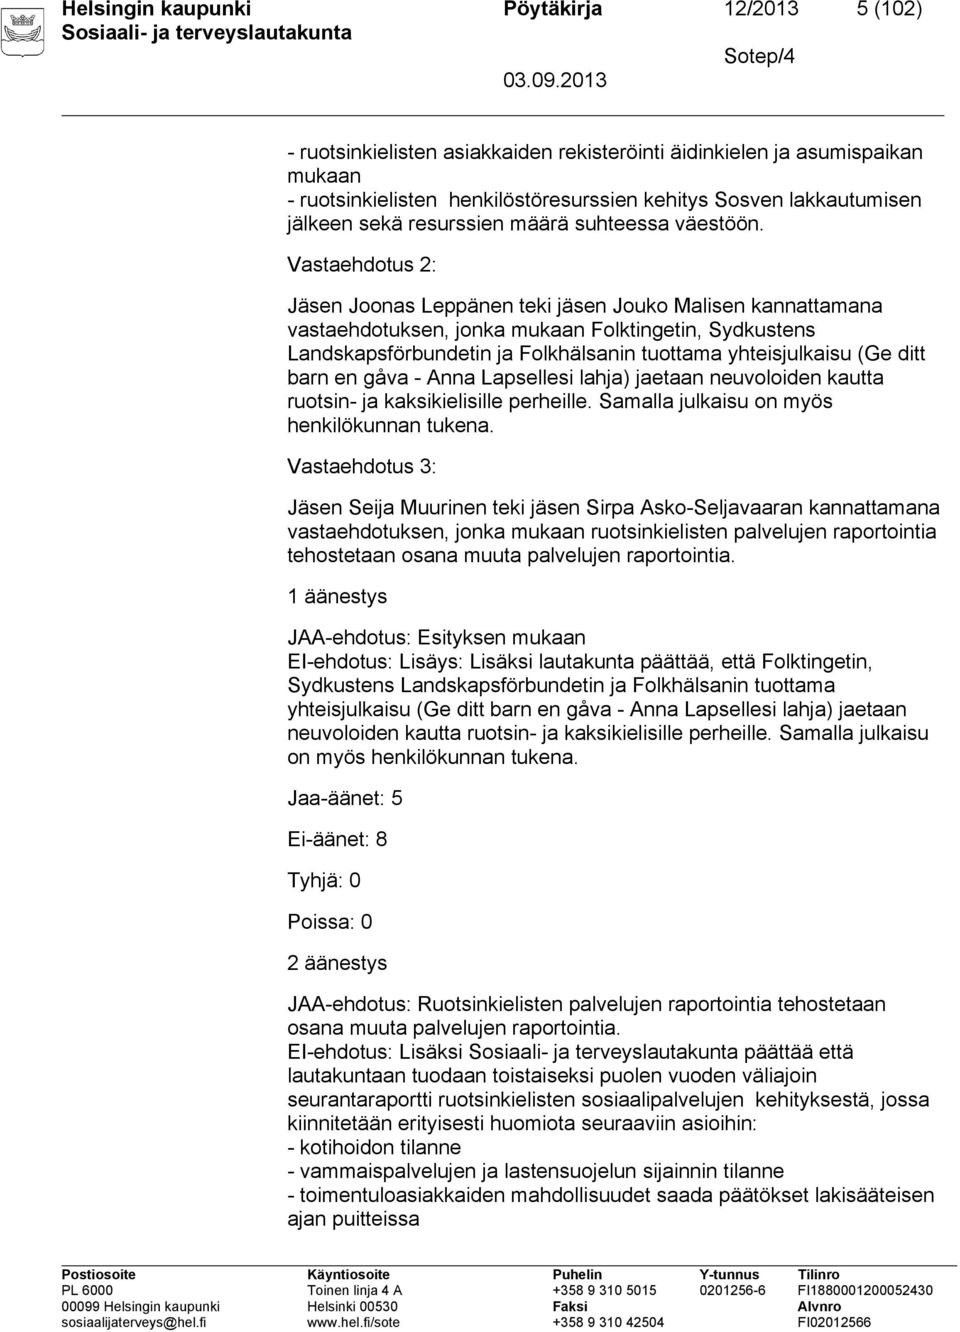 Vastaehdotus 2: Jäsen Joonas Leppänen teki jäsen Jouko Malisen kannattamana vastaehdotuksen, jonka mukaan Folktingetin, Sydkustens Landskapsförbundetin ja Folkhälsanin tuottama yhteisjulkaisu (Ge